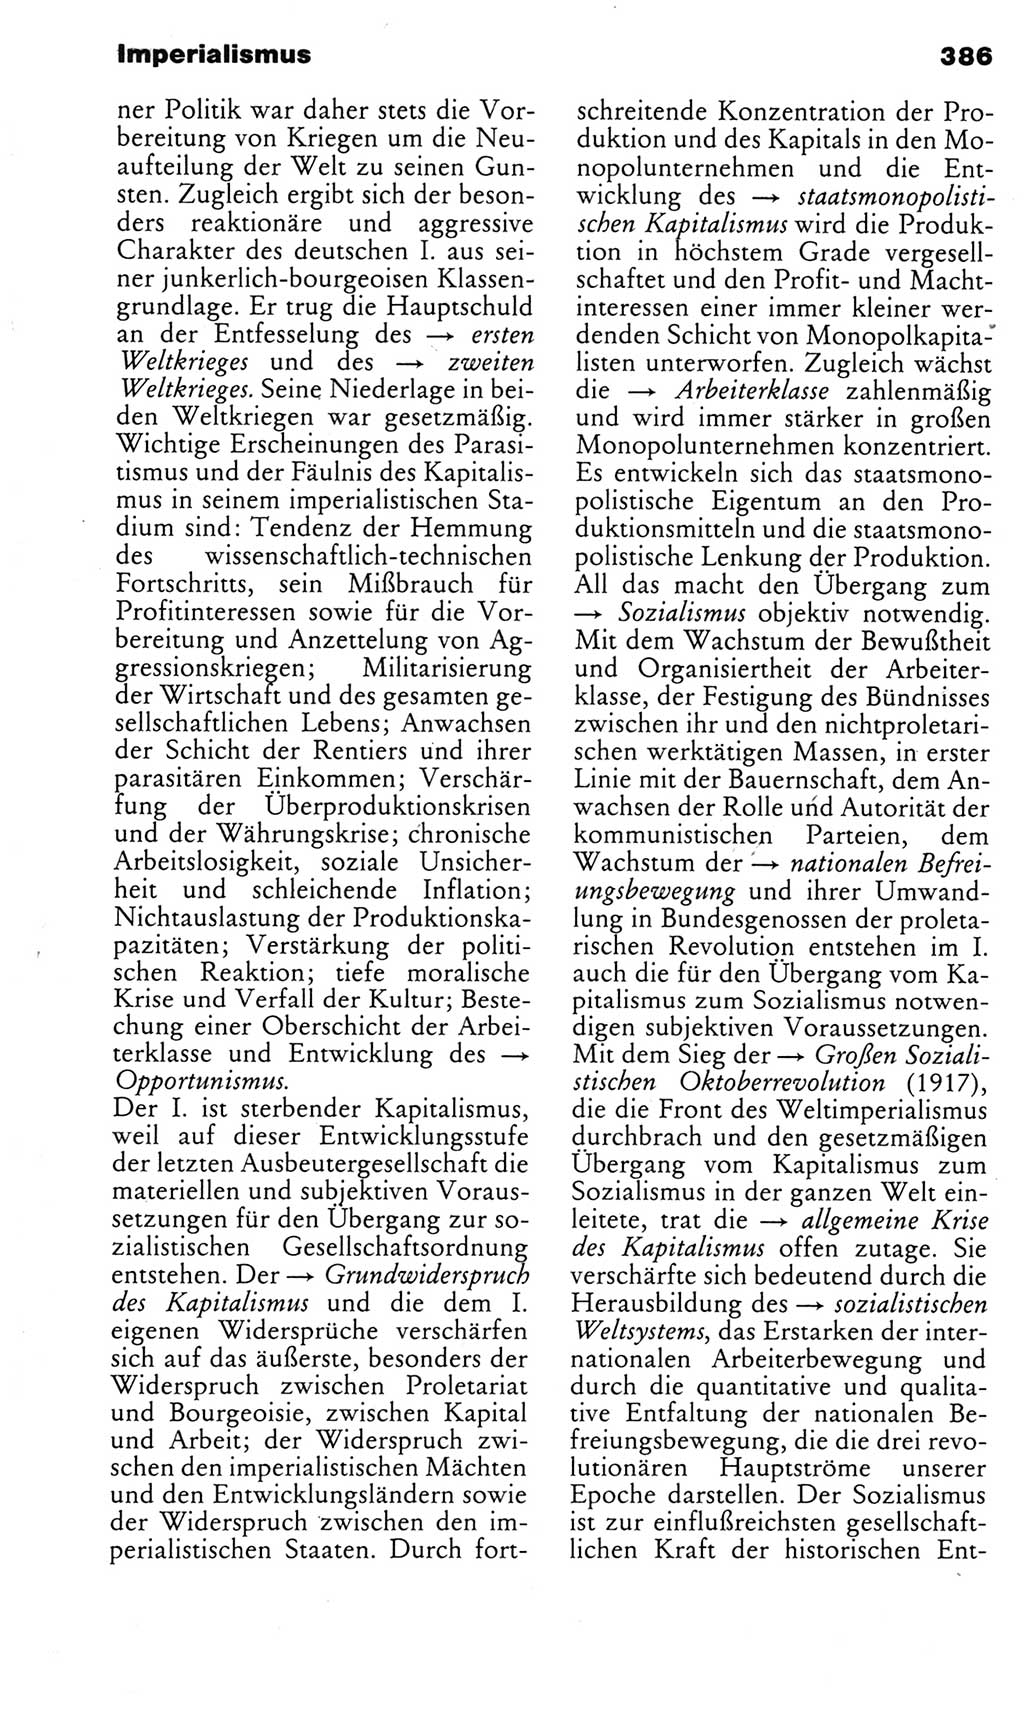 Kleines politisches Wörterbuch [Deutsche Demokratische Republik (DDR)] 1983, Seite 386 (Kl. pol. Wb. DDR 1983, S. 386)